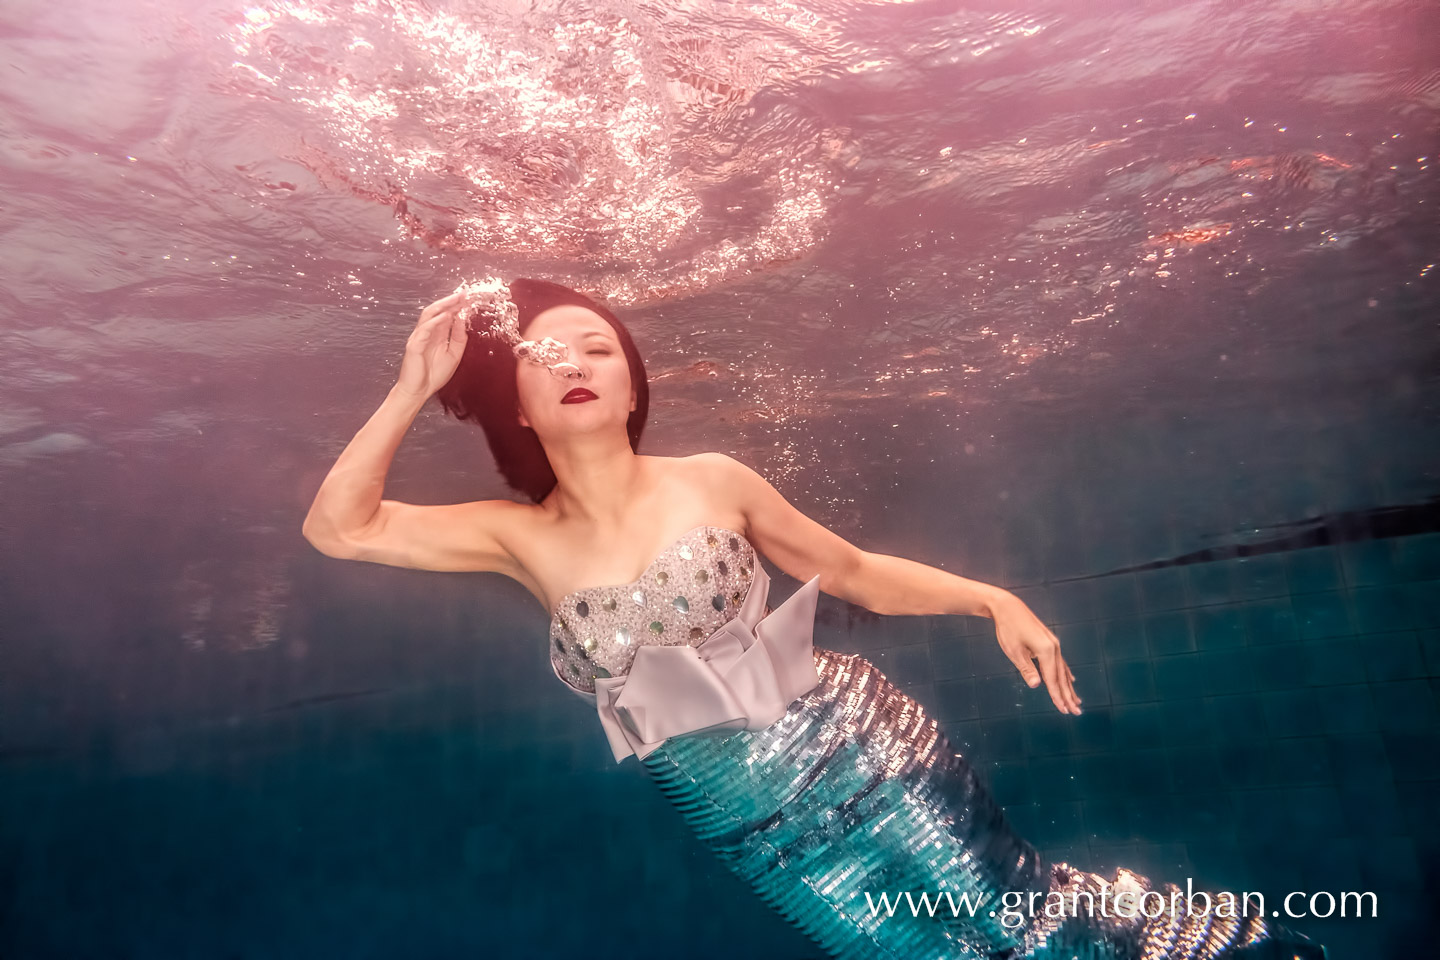 underwater pool portrait photography